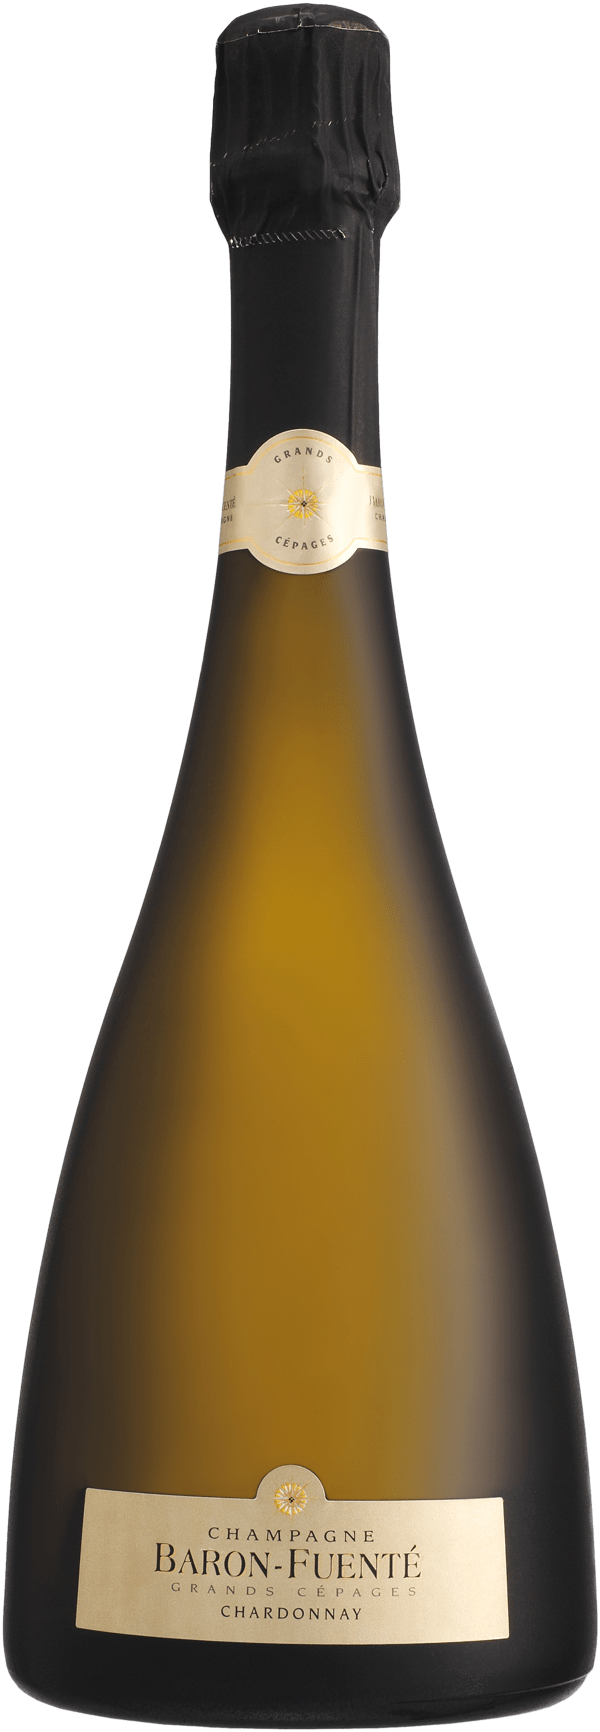 Baron-Fuenté Grand Cépage Chardonnay Brut